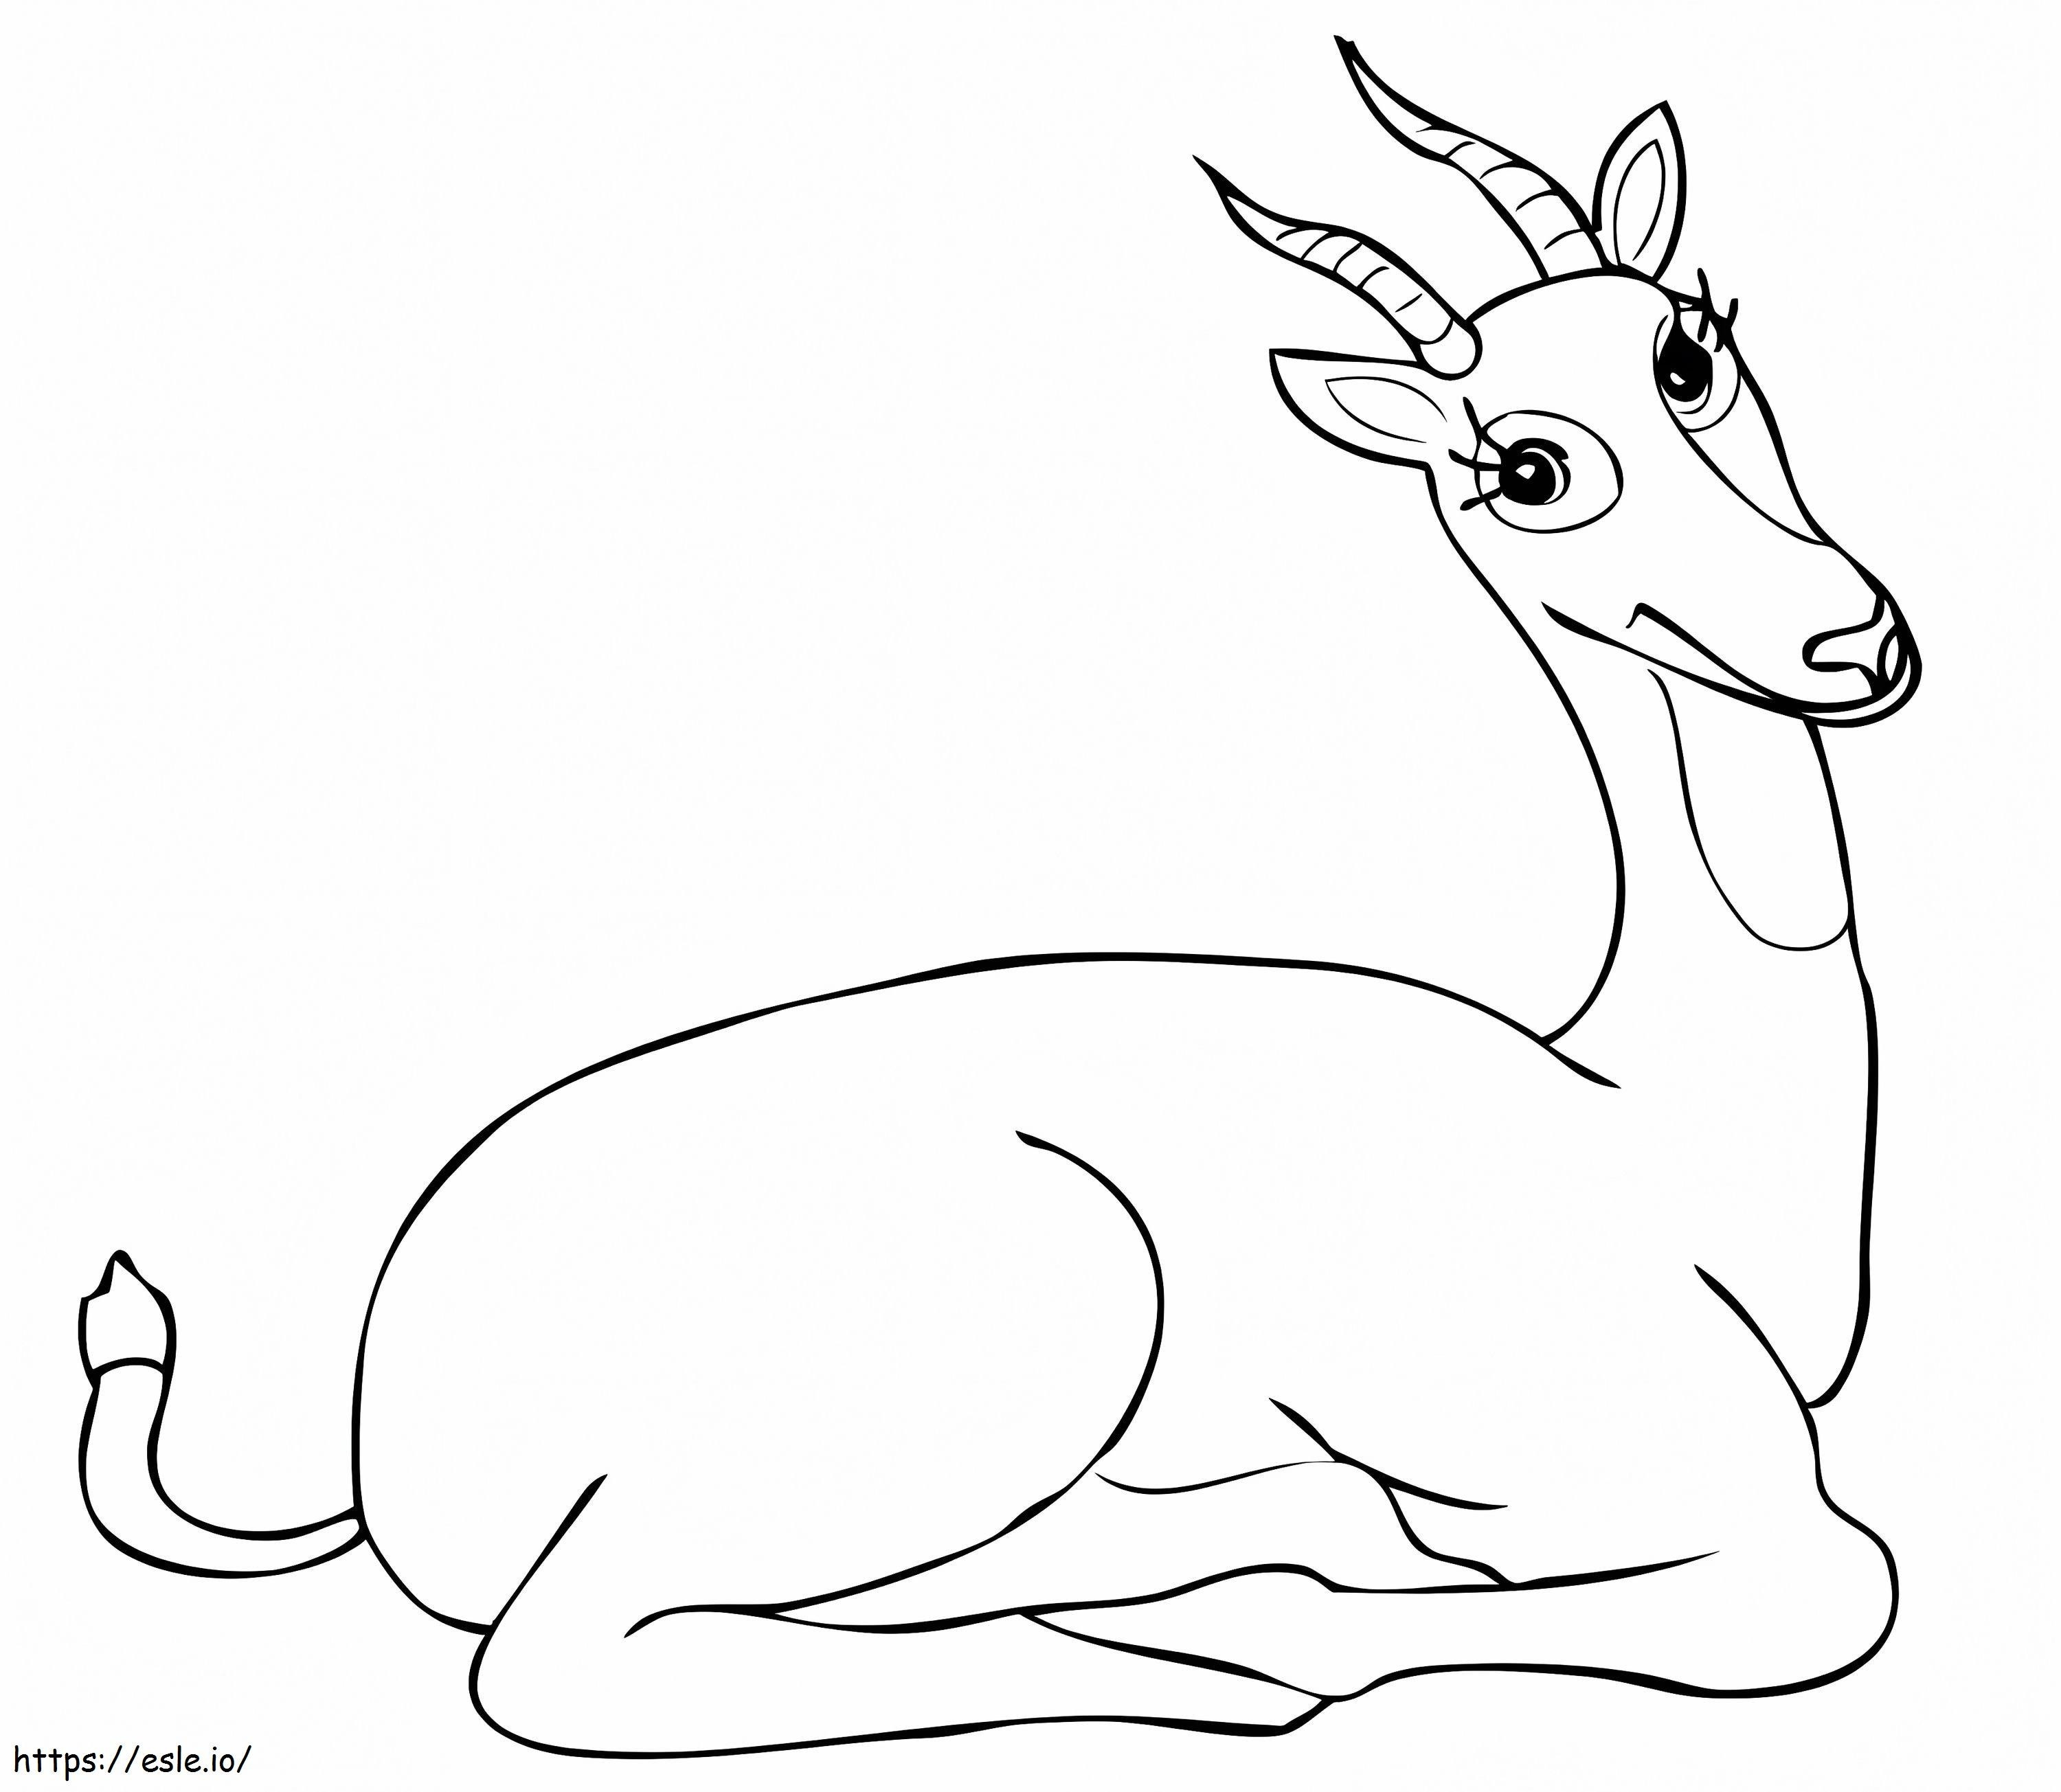 Divertente antilope Kob dell'Uganda da colorare